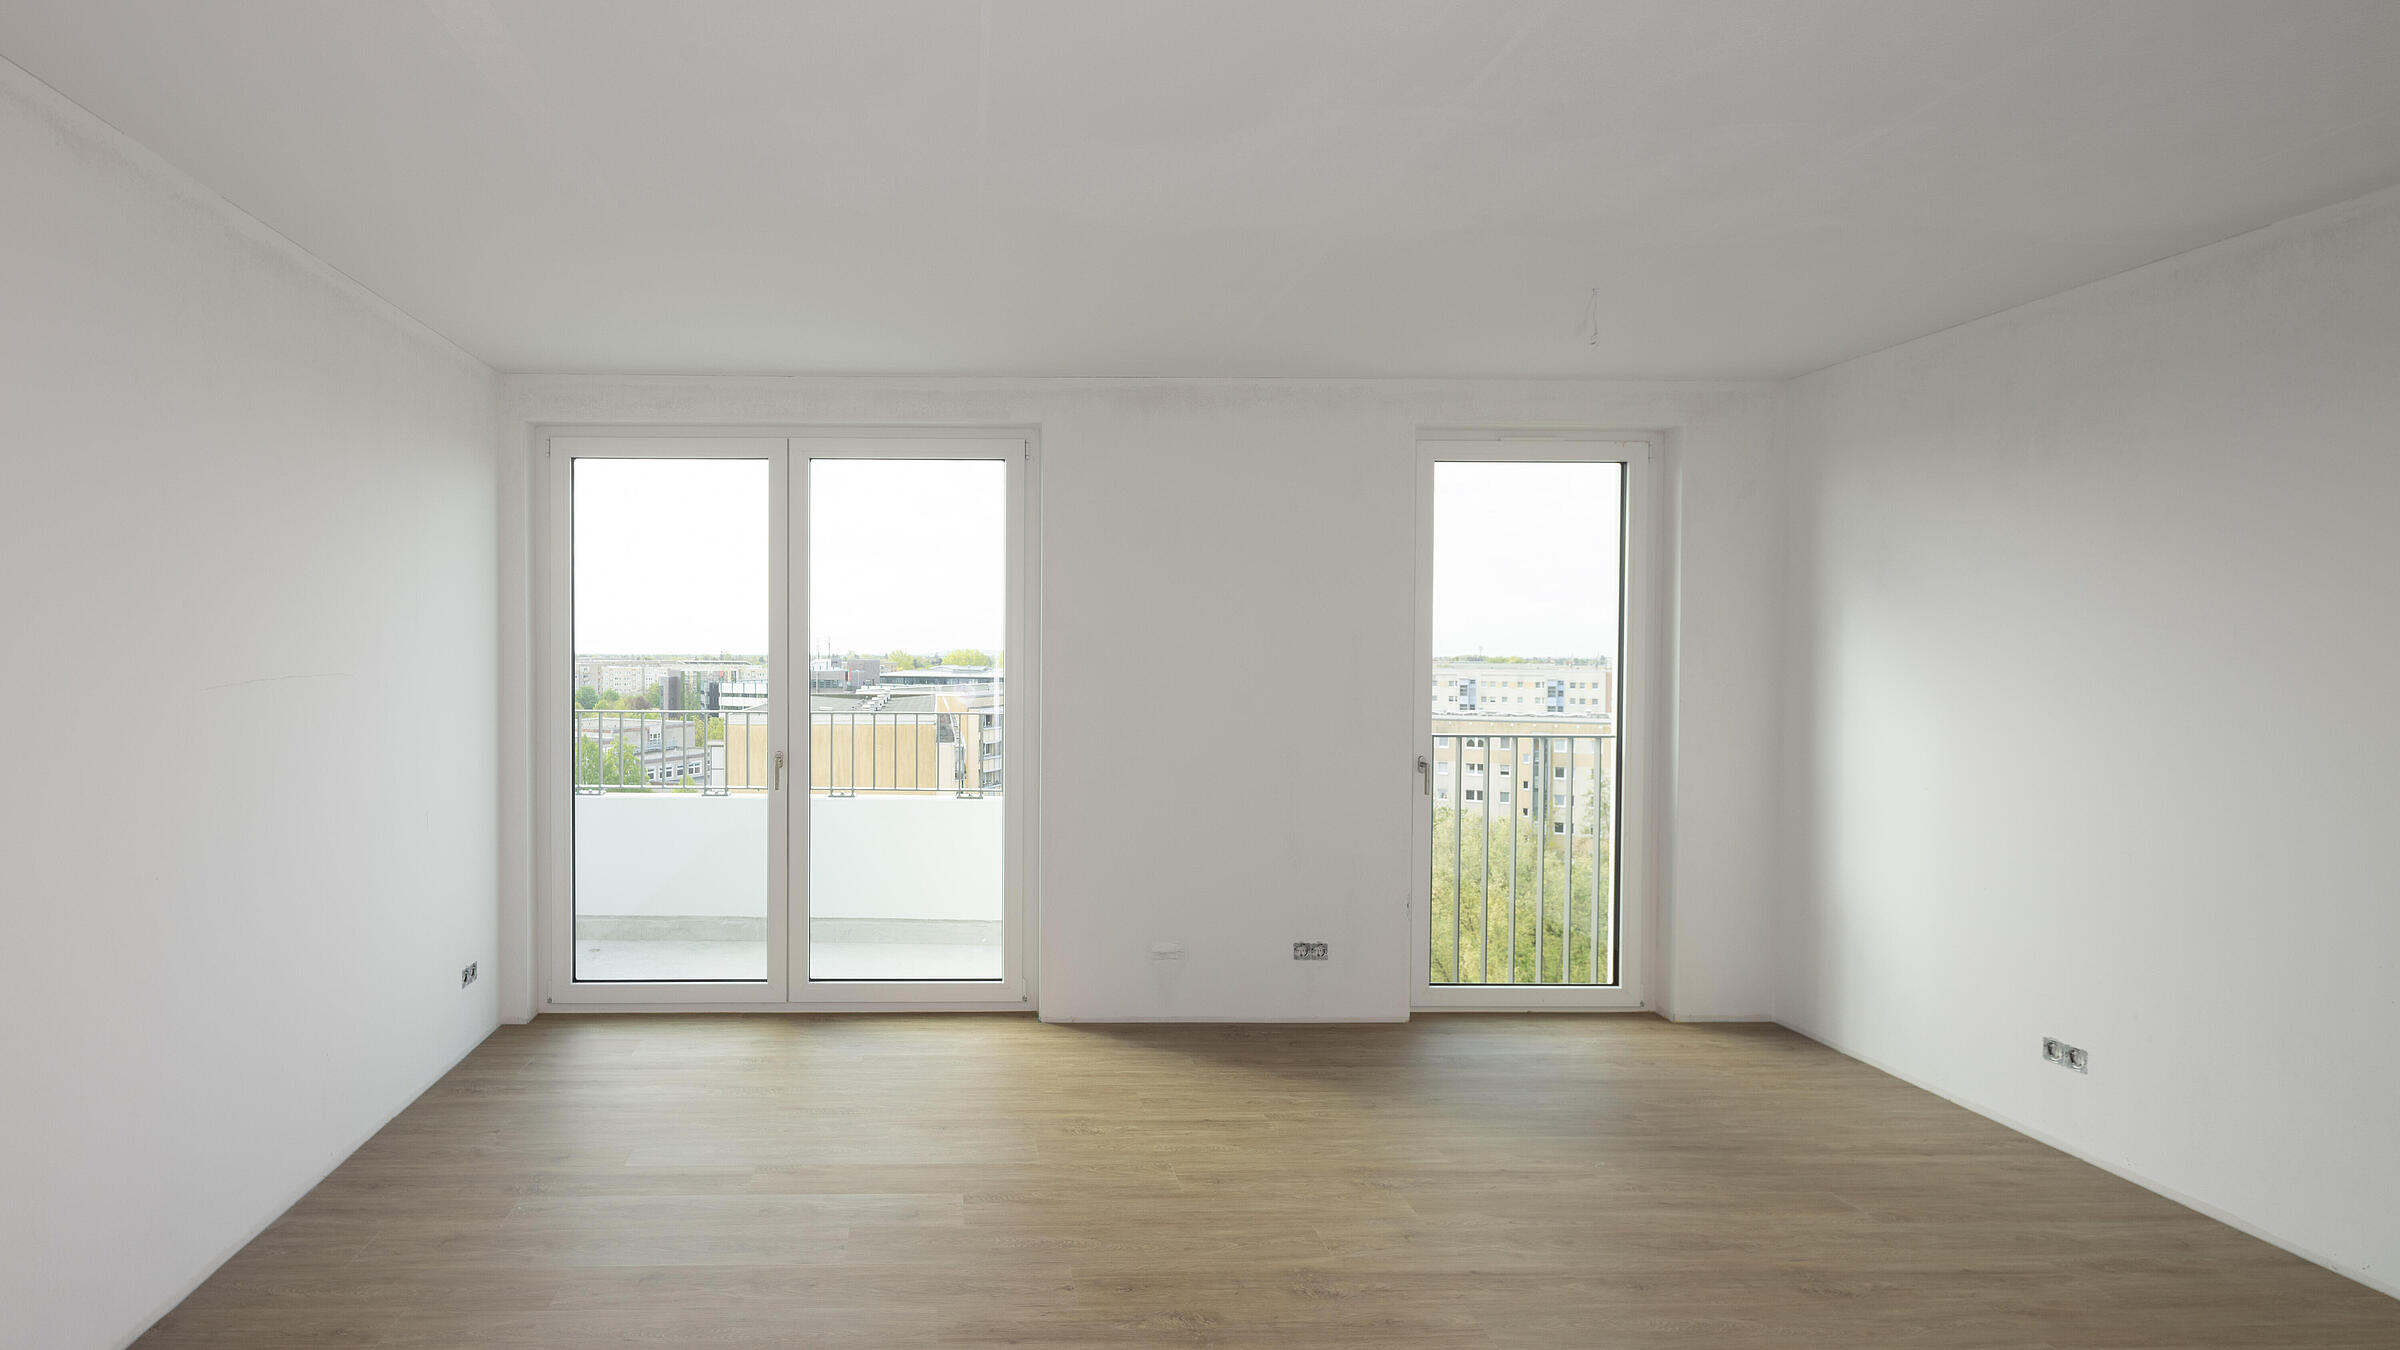 Bild zeigt Blick Zimmer in Richtung Balkonfenster in Musterwohnung in der Martin-Riesenburger-Straße.